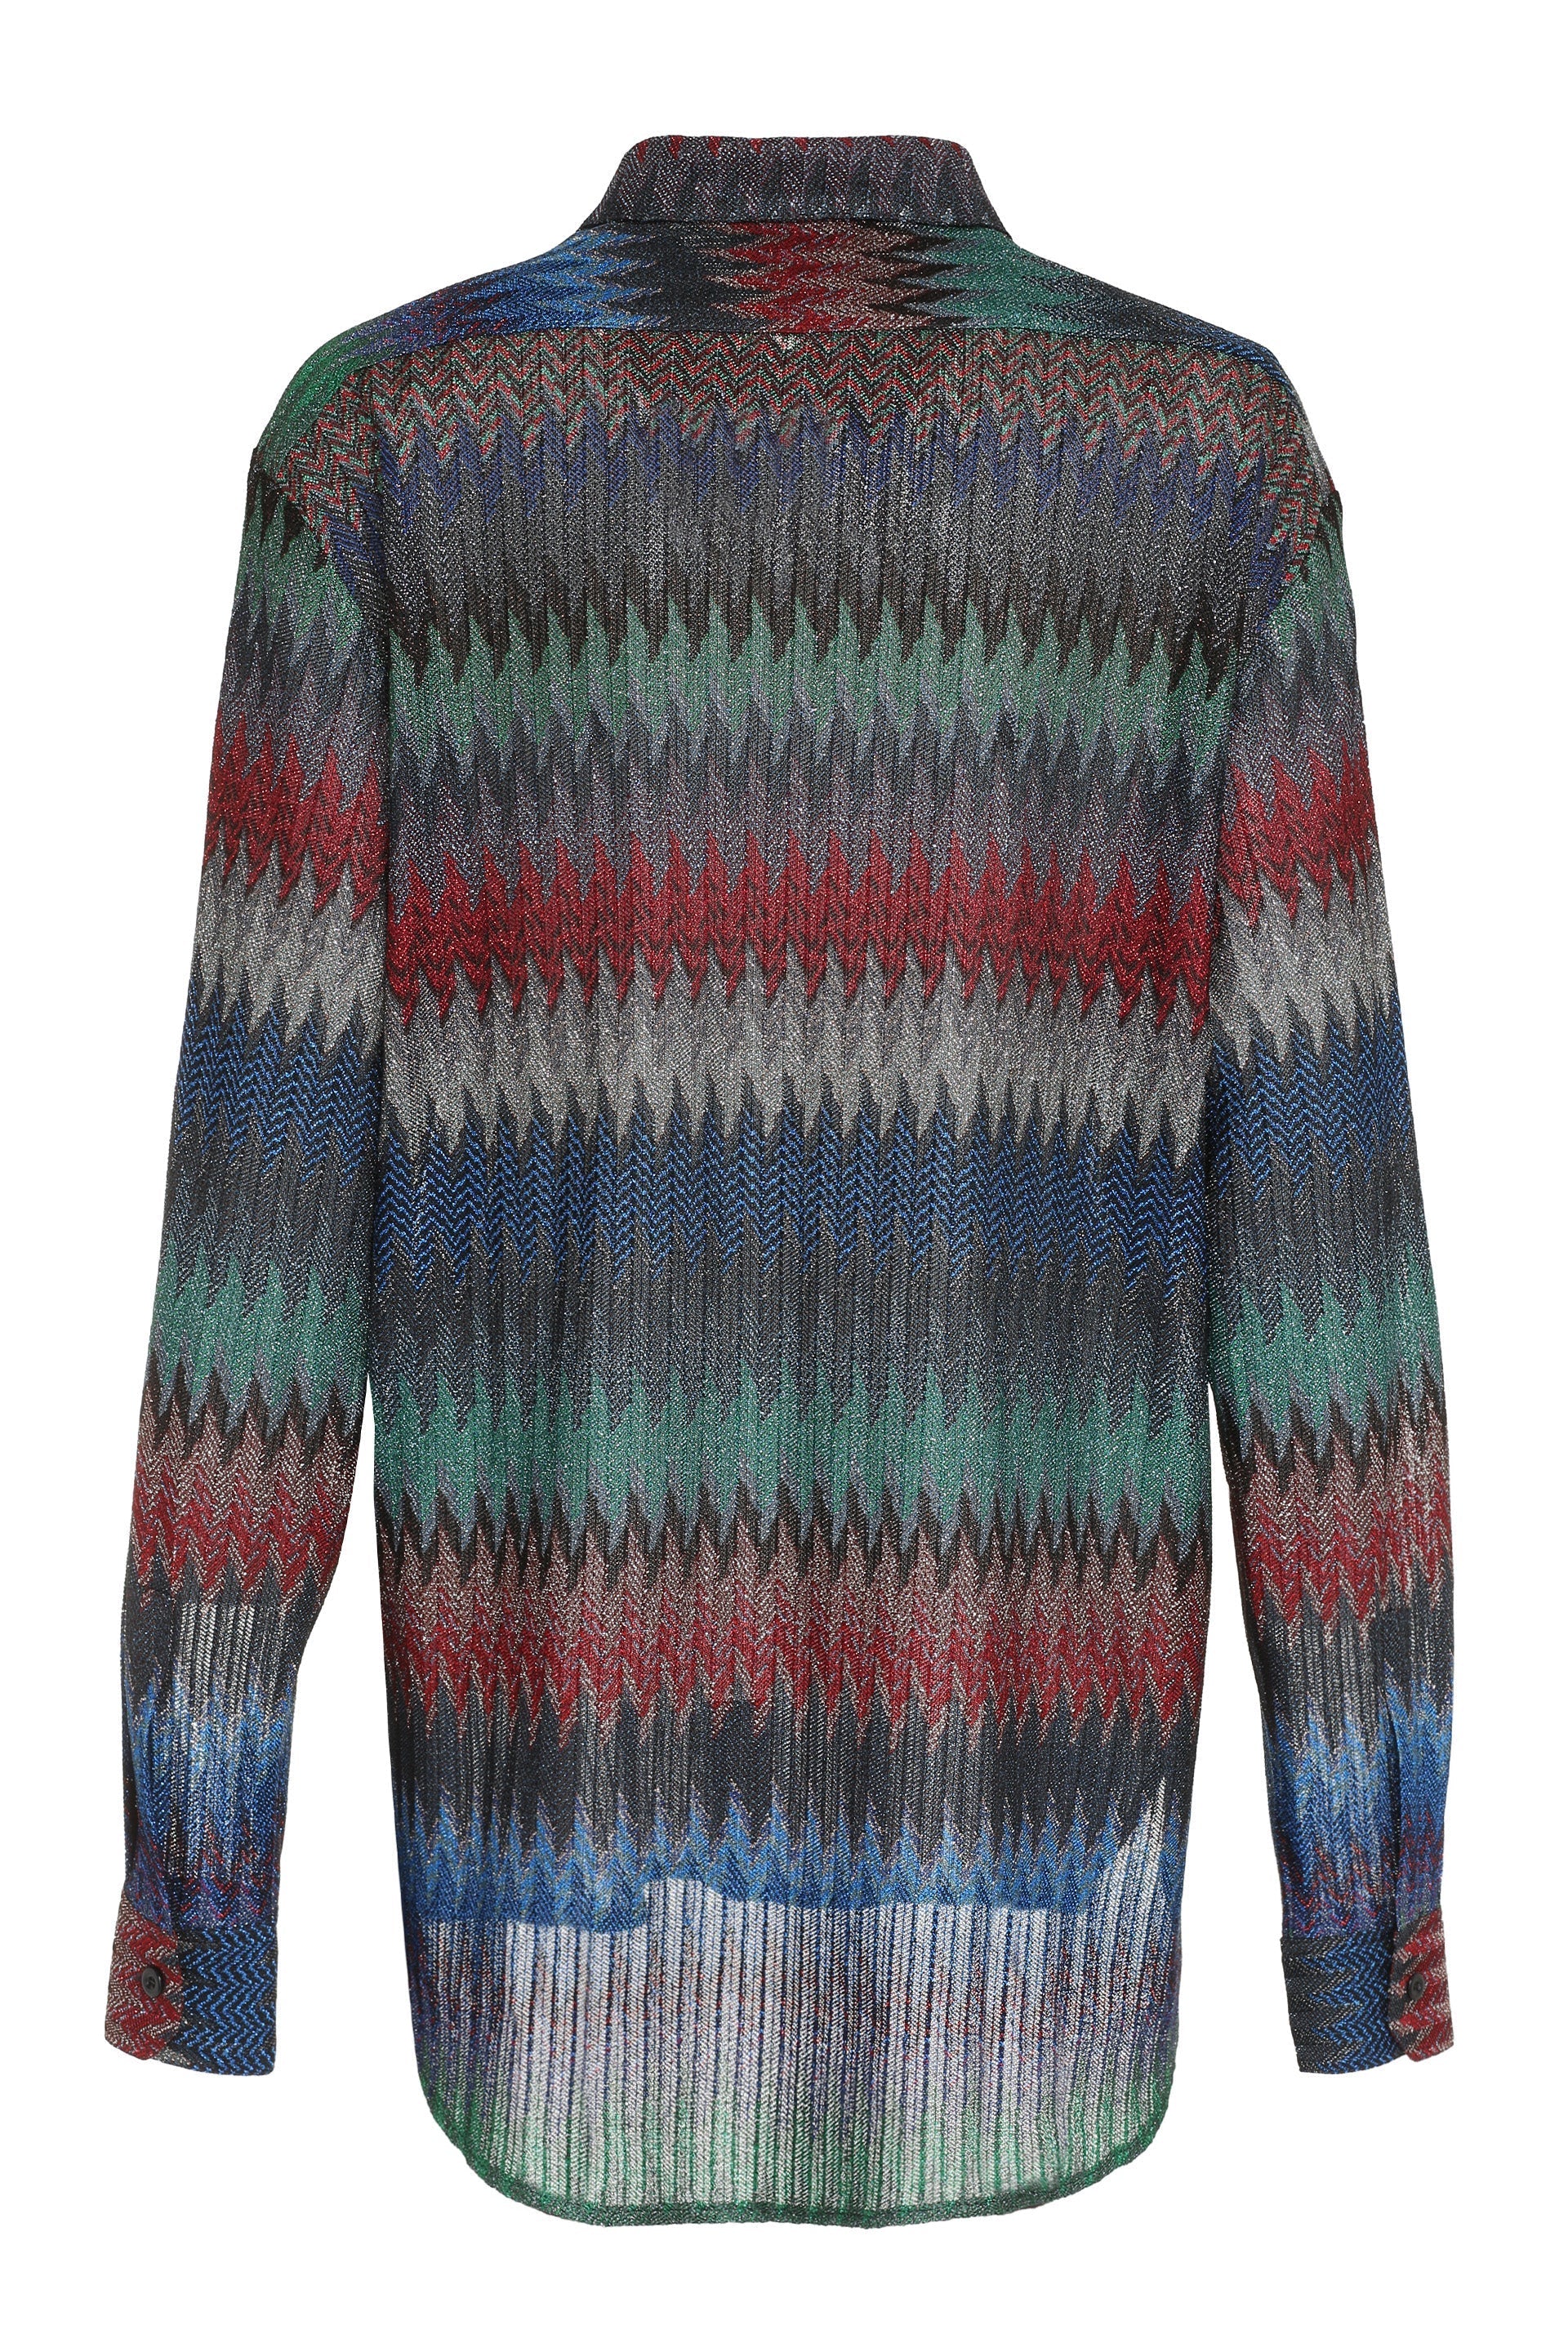 Chevron knit shirt-Missoni-OUTLET-SALE-ARCHIVIST